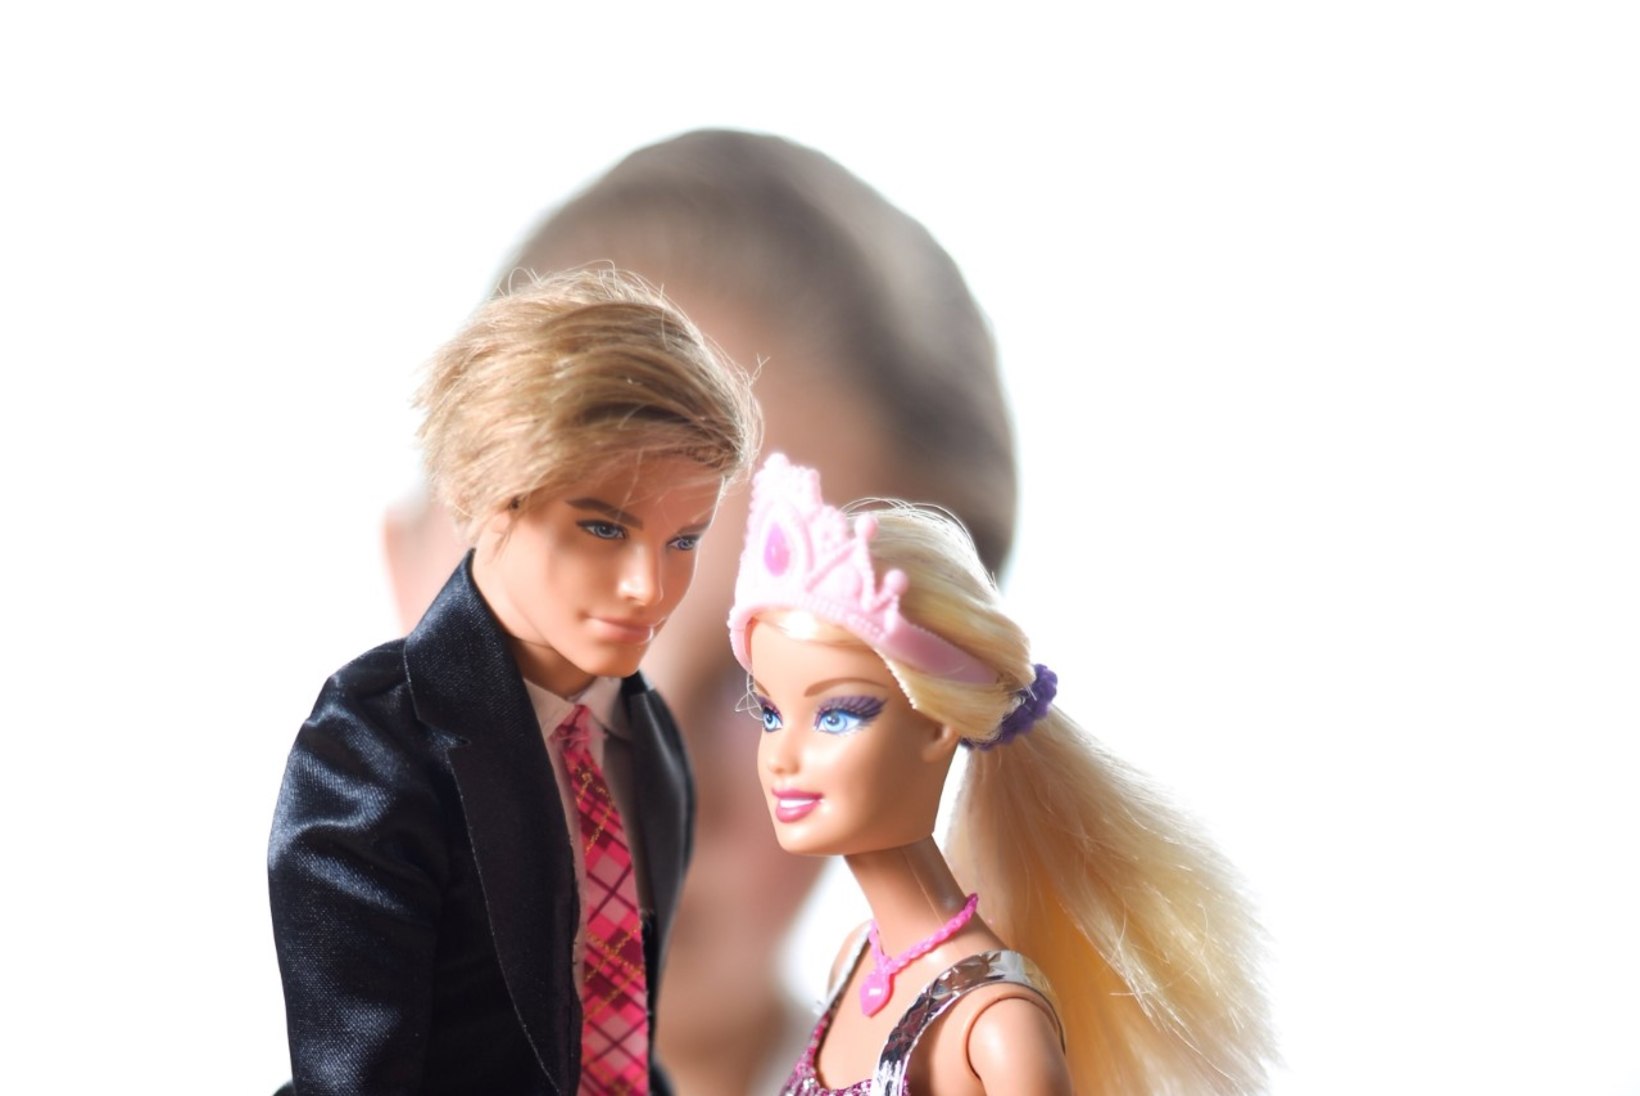 56aastane Barbie trügib siiani alatasa uudistesse